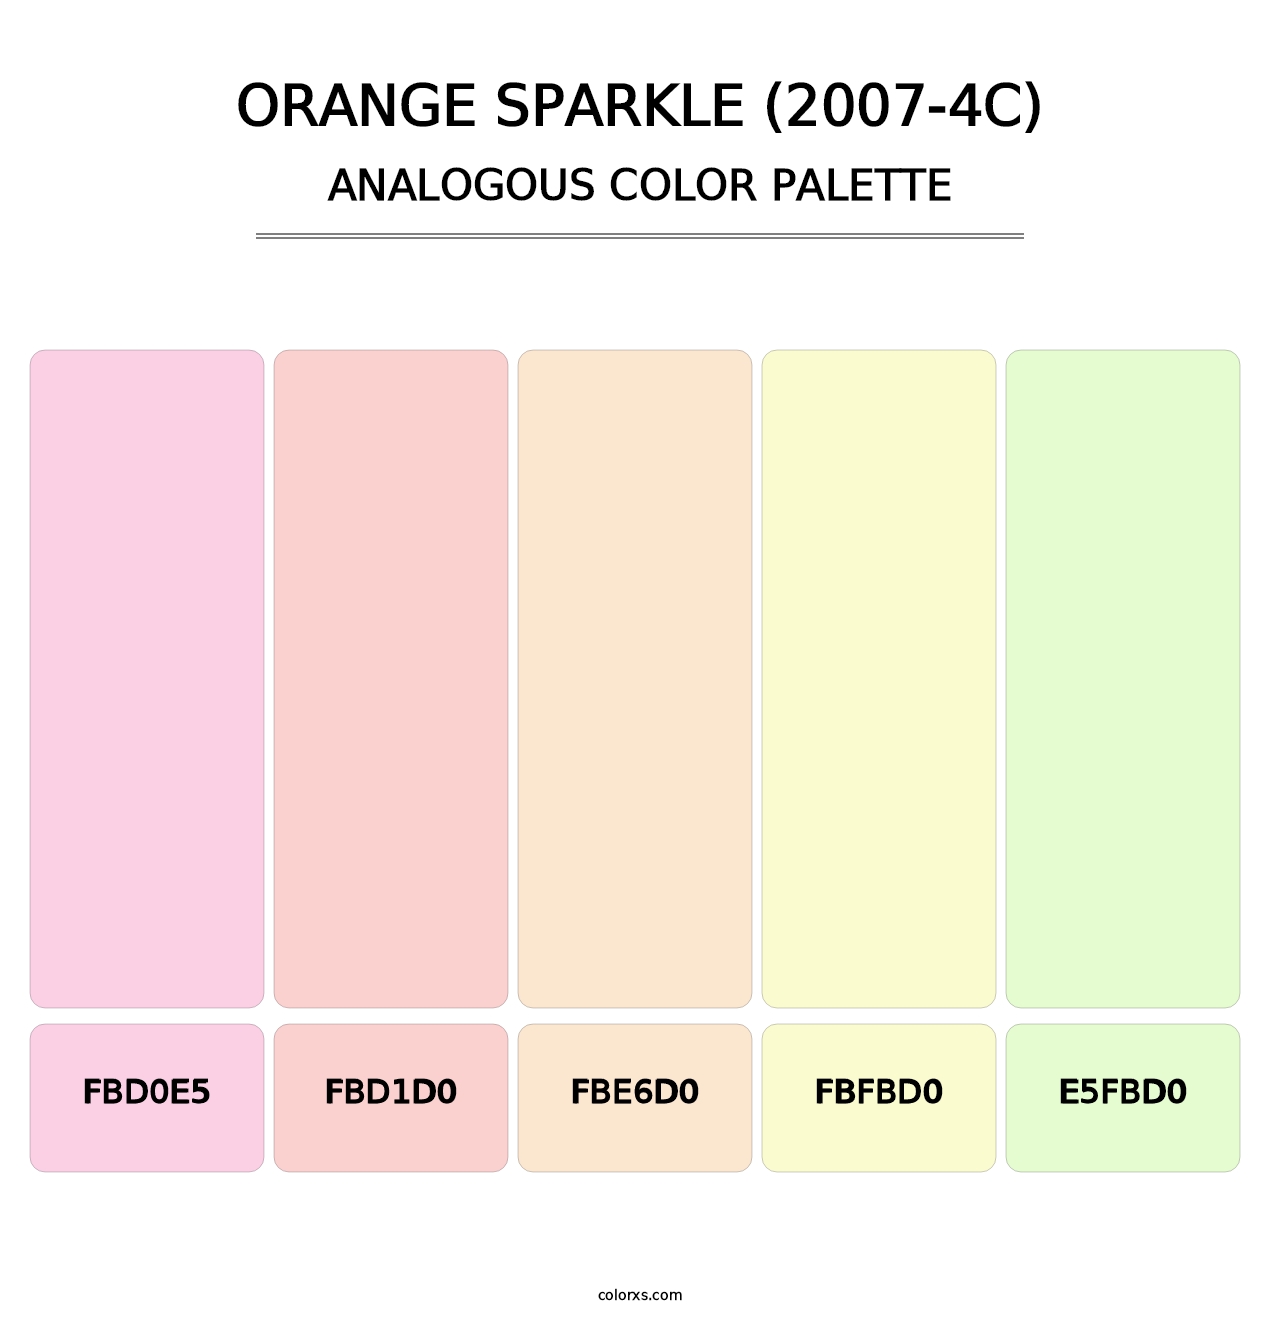 Orange Sparkle (2007-4C) - Analogous Color Palette